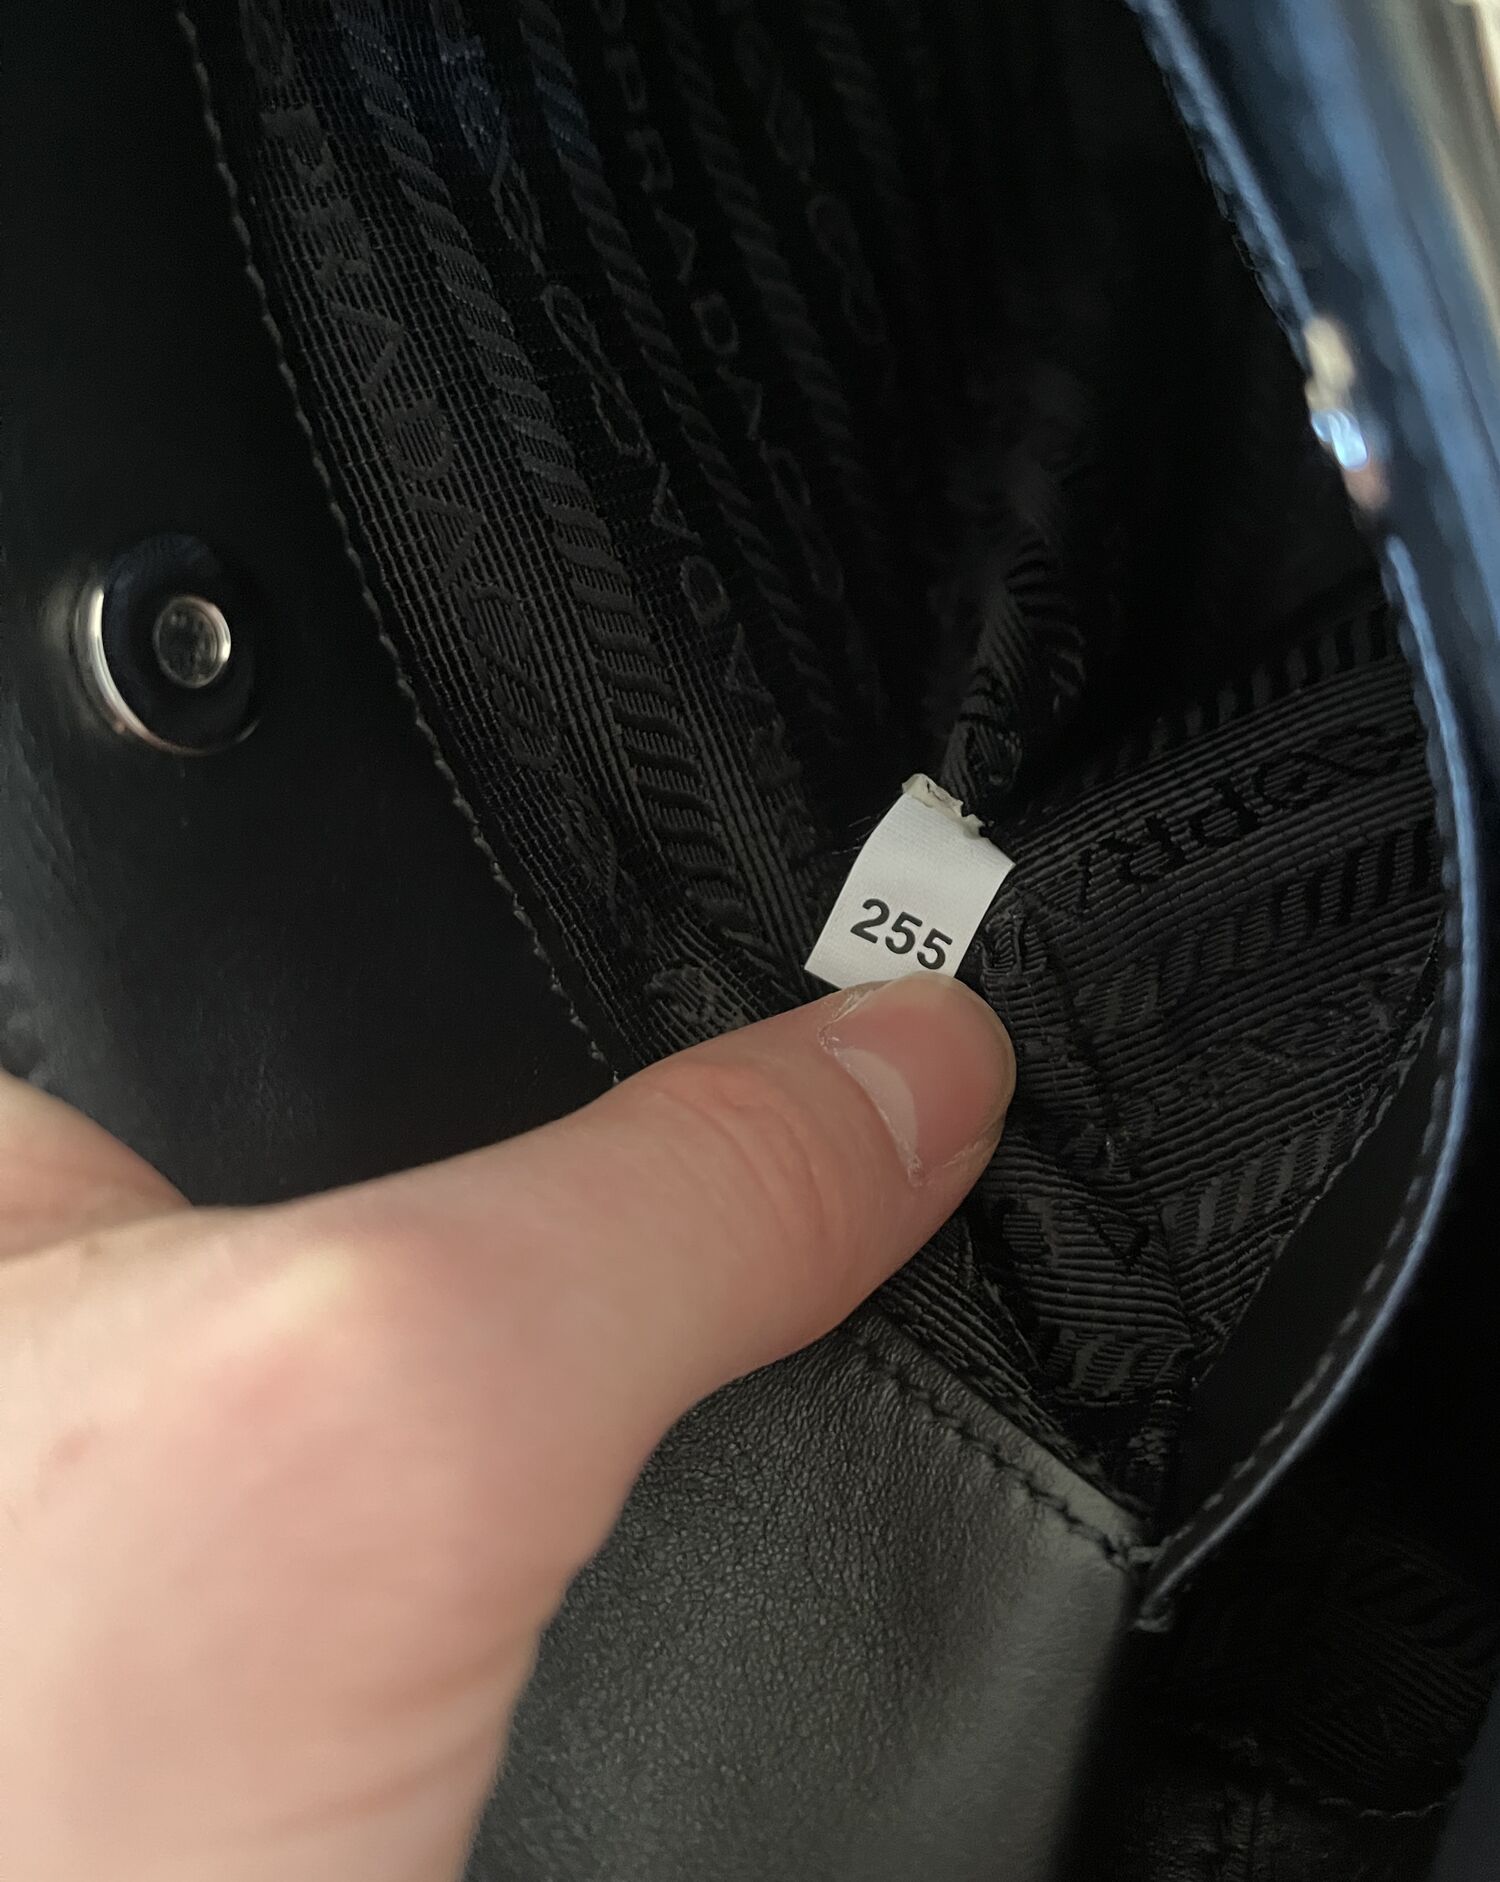 Prada Cleo Brushed Leather Shoulder Bag (Varied Colors) 1BC499